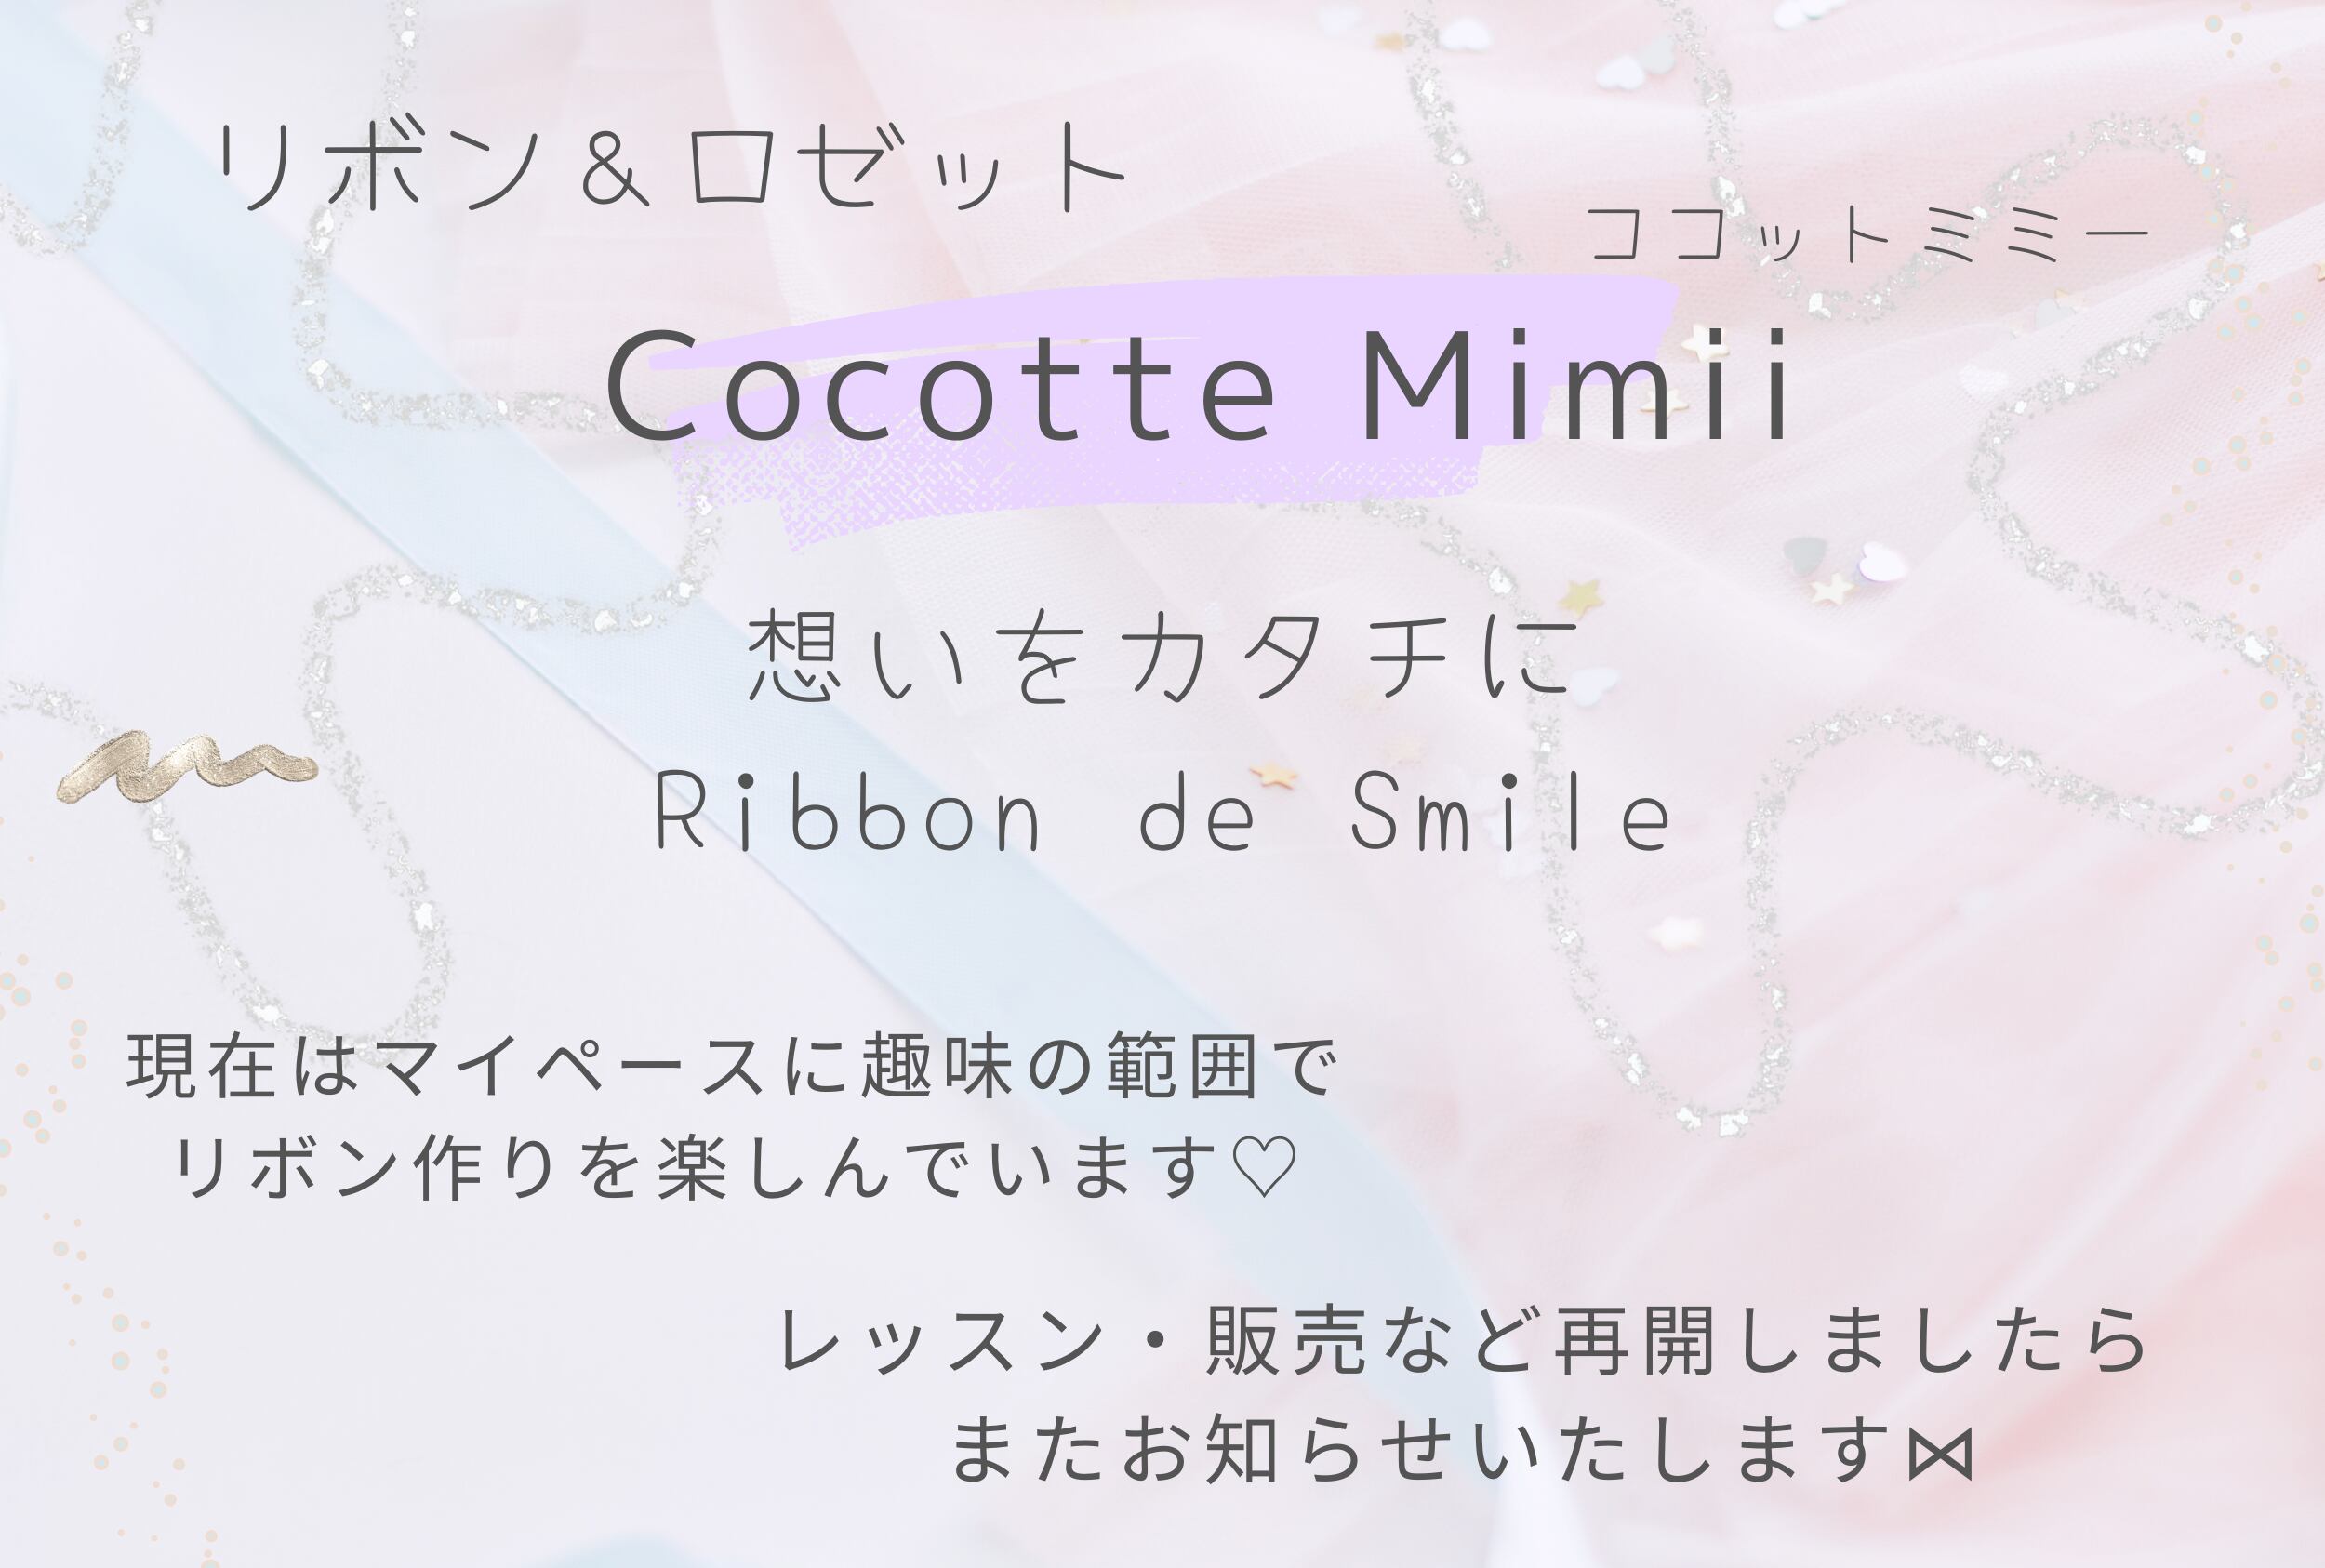 Cocotte Mimii